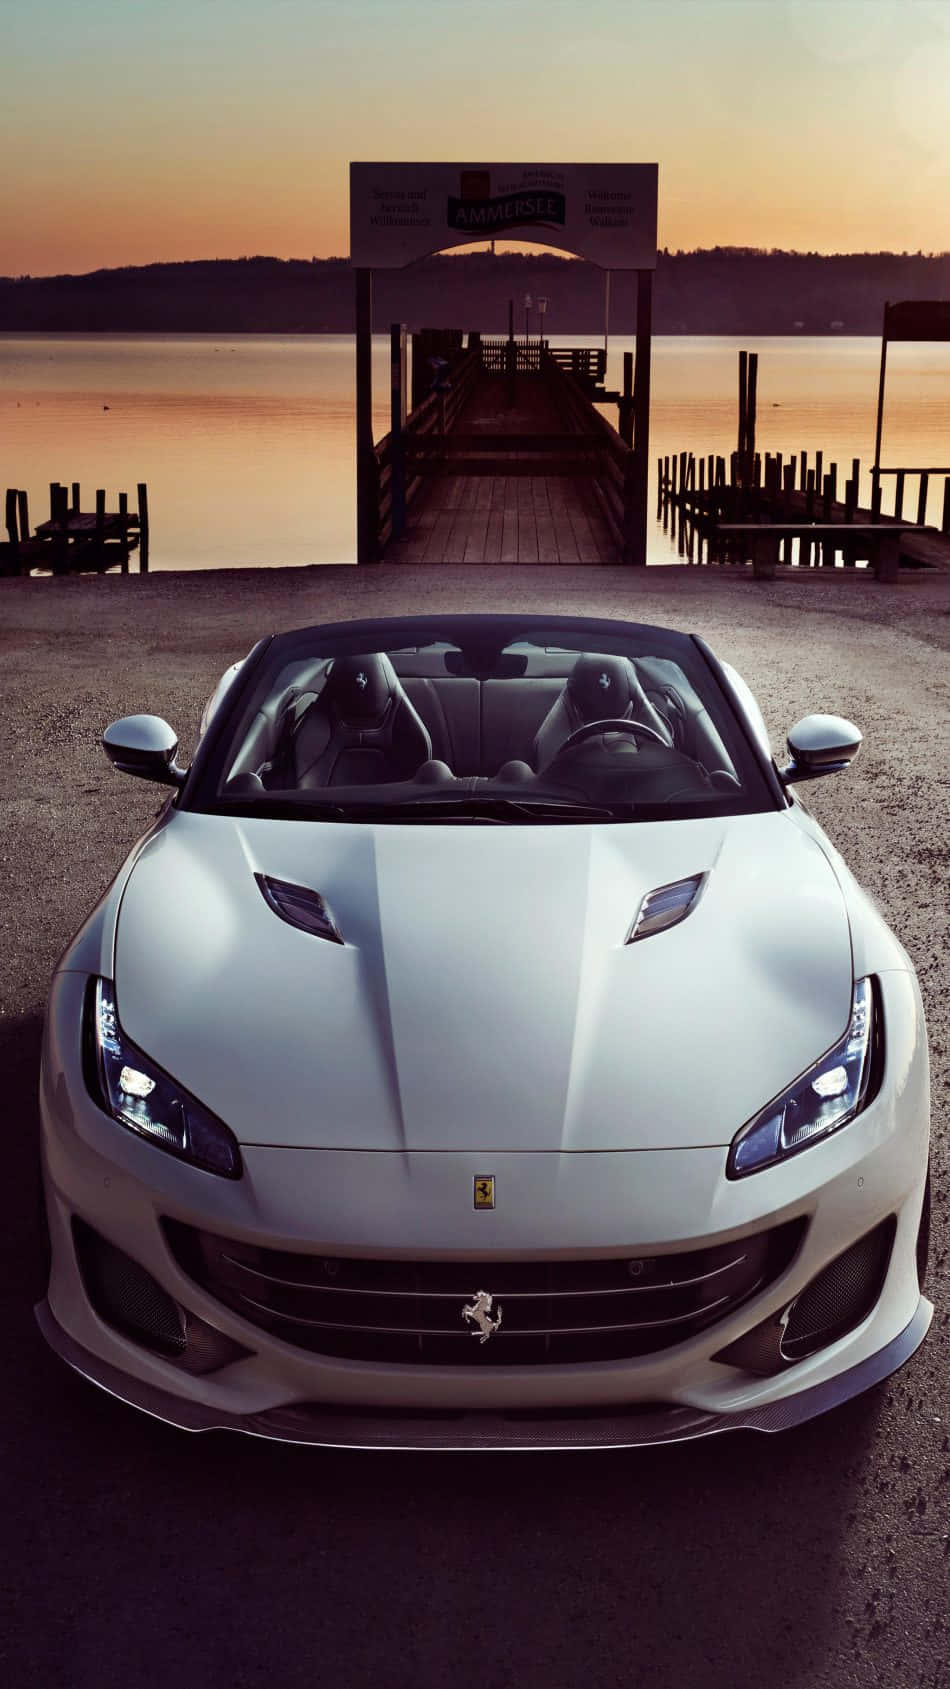 Machensie Sich Bereit Für Eine Aufregende Fahrt Mit Diesem Eleganten Weißen Ferrari Iphone. Wallpaper